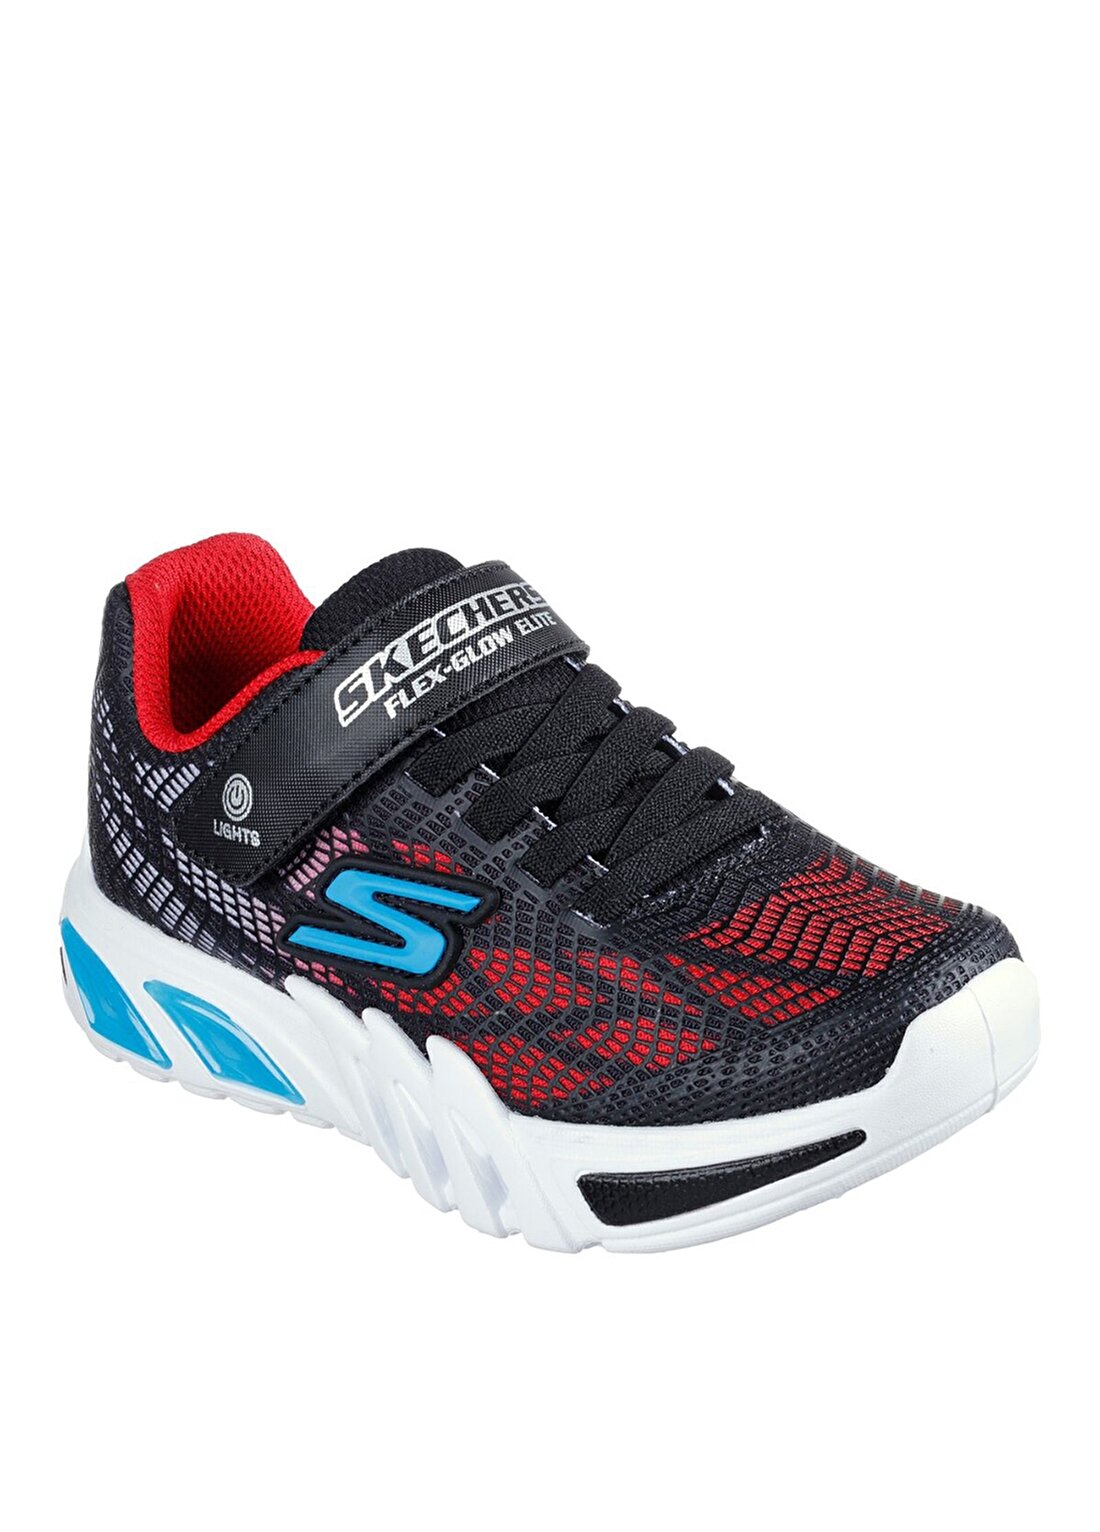 Skechers Siyah - Kırmızı - Mavi Erkek Çocuk Yürüyüş Ayakkabısı 400137L BKRB FLEX-GLOW ELITE - VORL